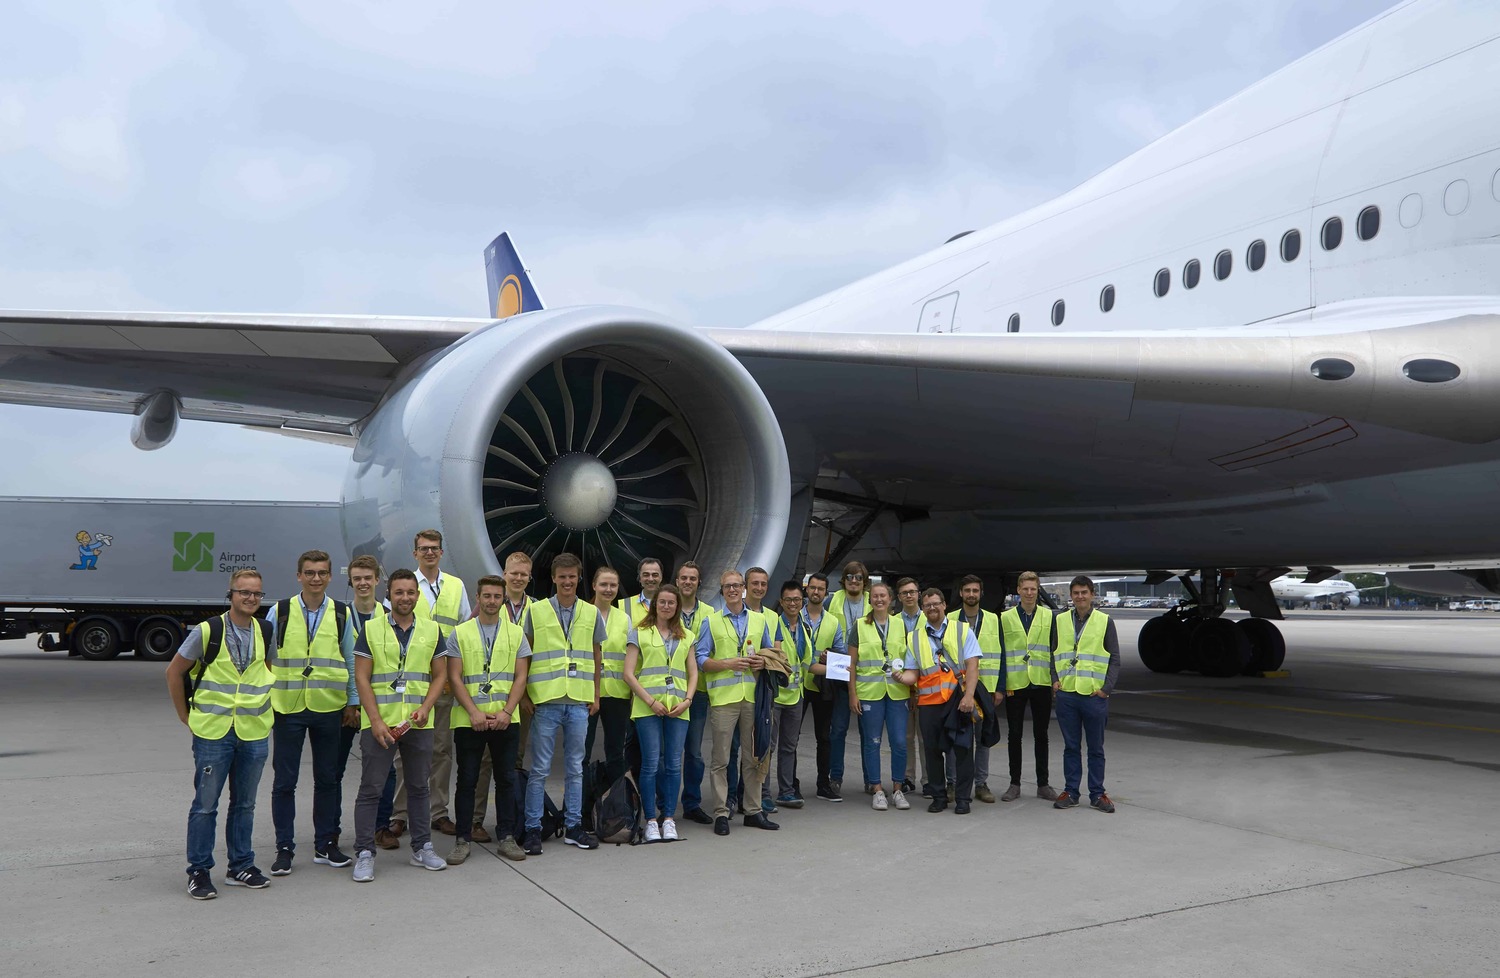 Exkursion zu Lufthansa Technik